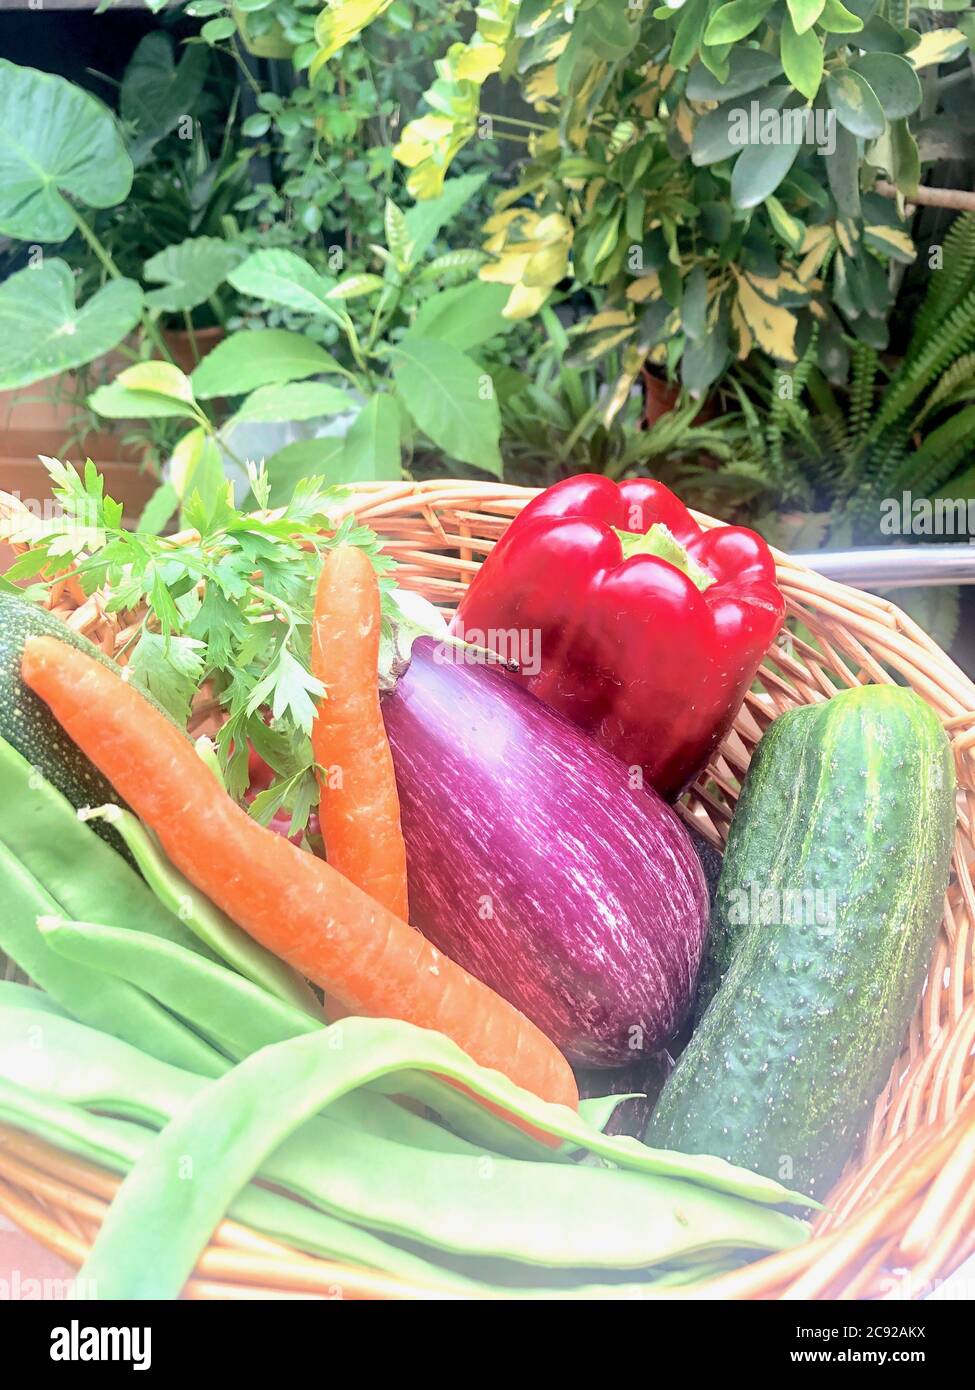 Verduras frescas y hortalizas Stock Photo